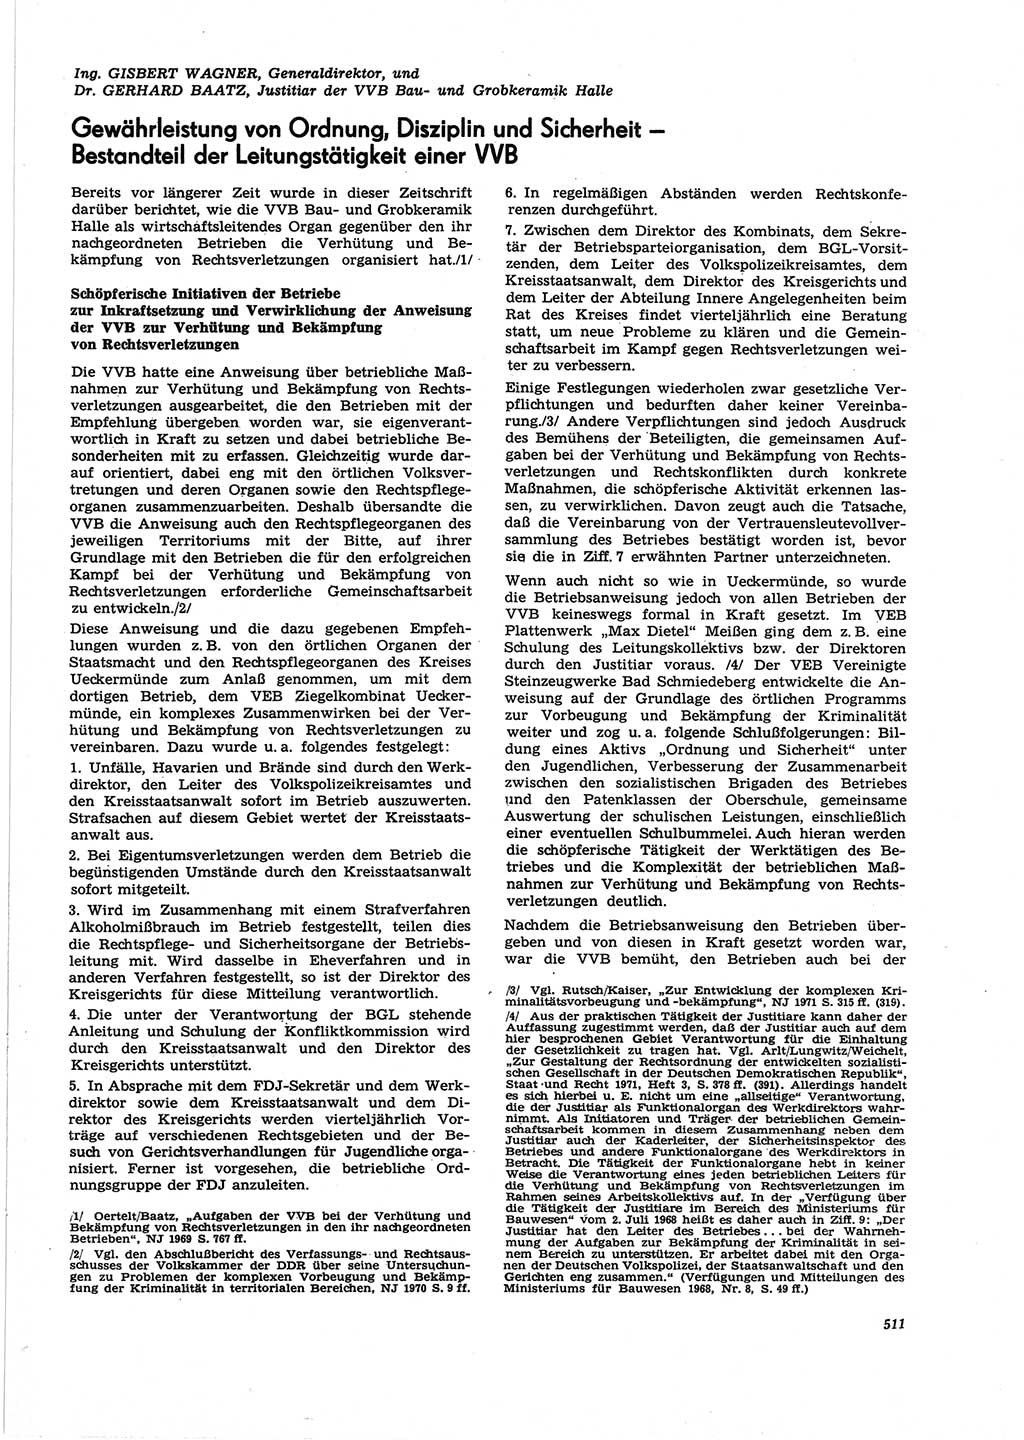 Neue Justiz (NJ), Zeitschrift für Recht und Rechtswissenschaft [Deutsche Demokratische Republik (DDR)], 25. Jahrgang 1971, Seite 511 (NJ DDR 1971, S. 511)